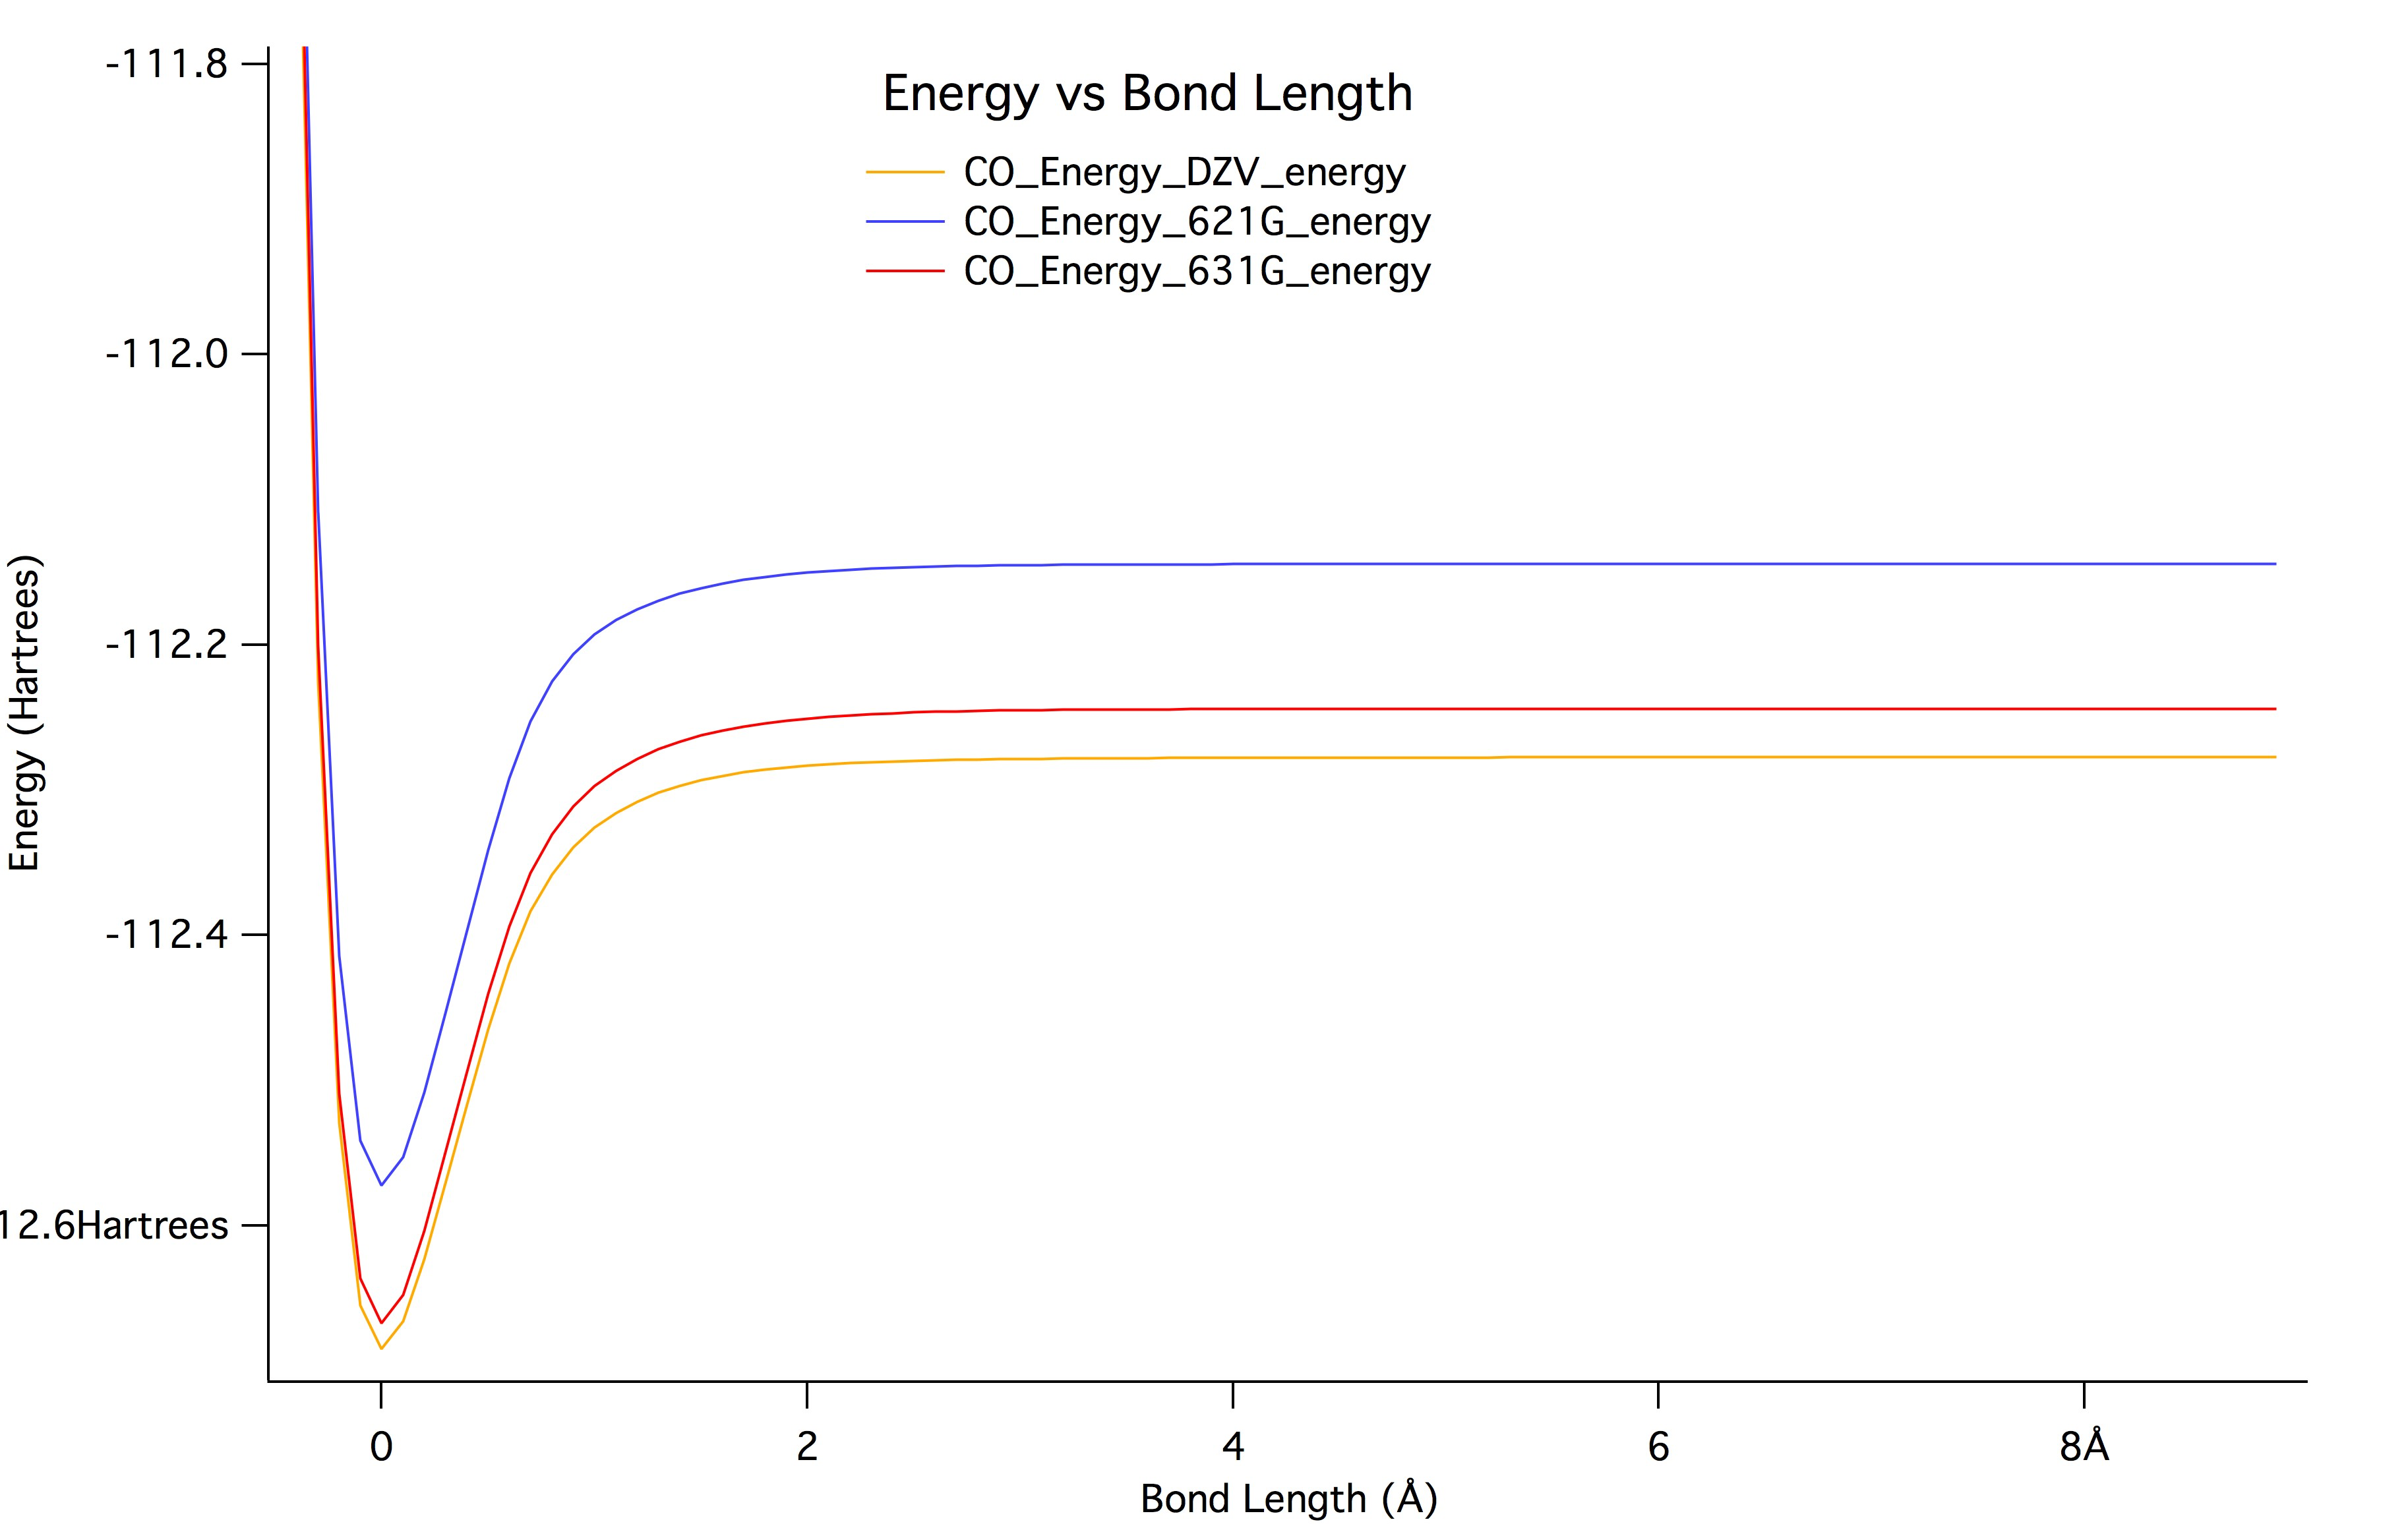 Energy vs Bond Length of CO